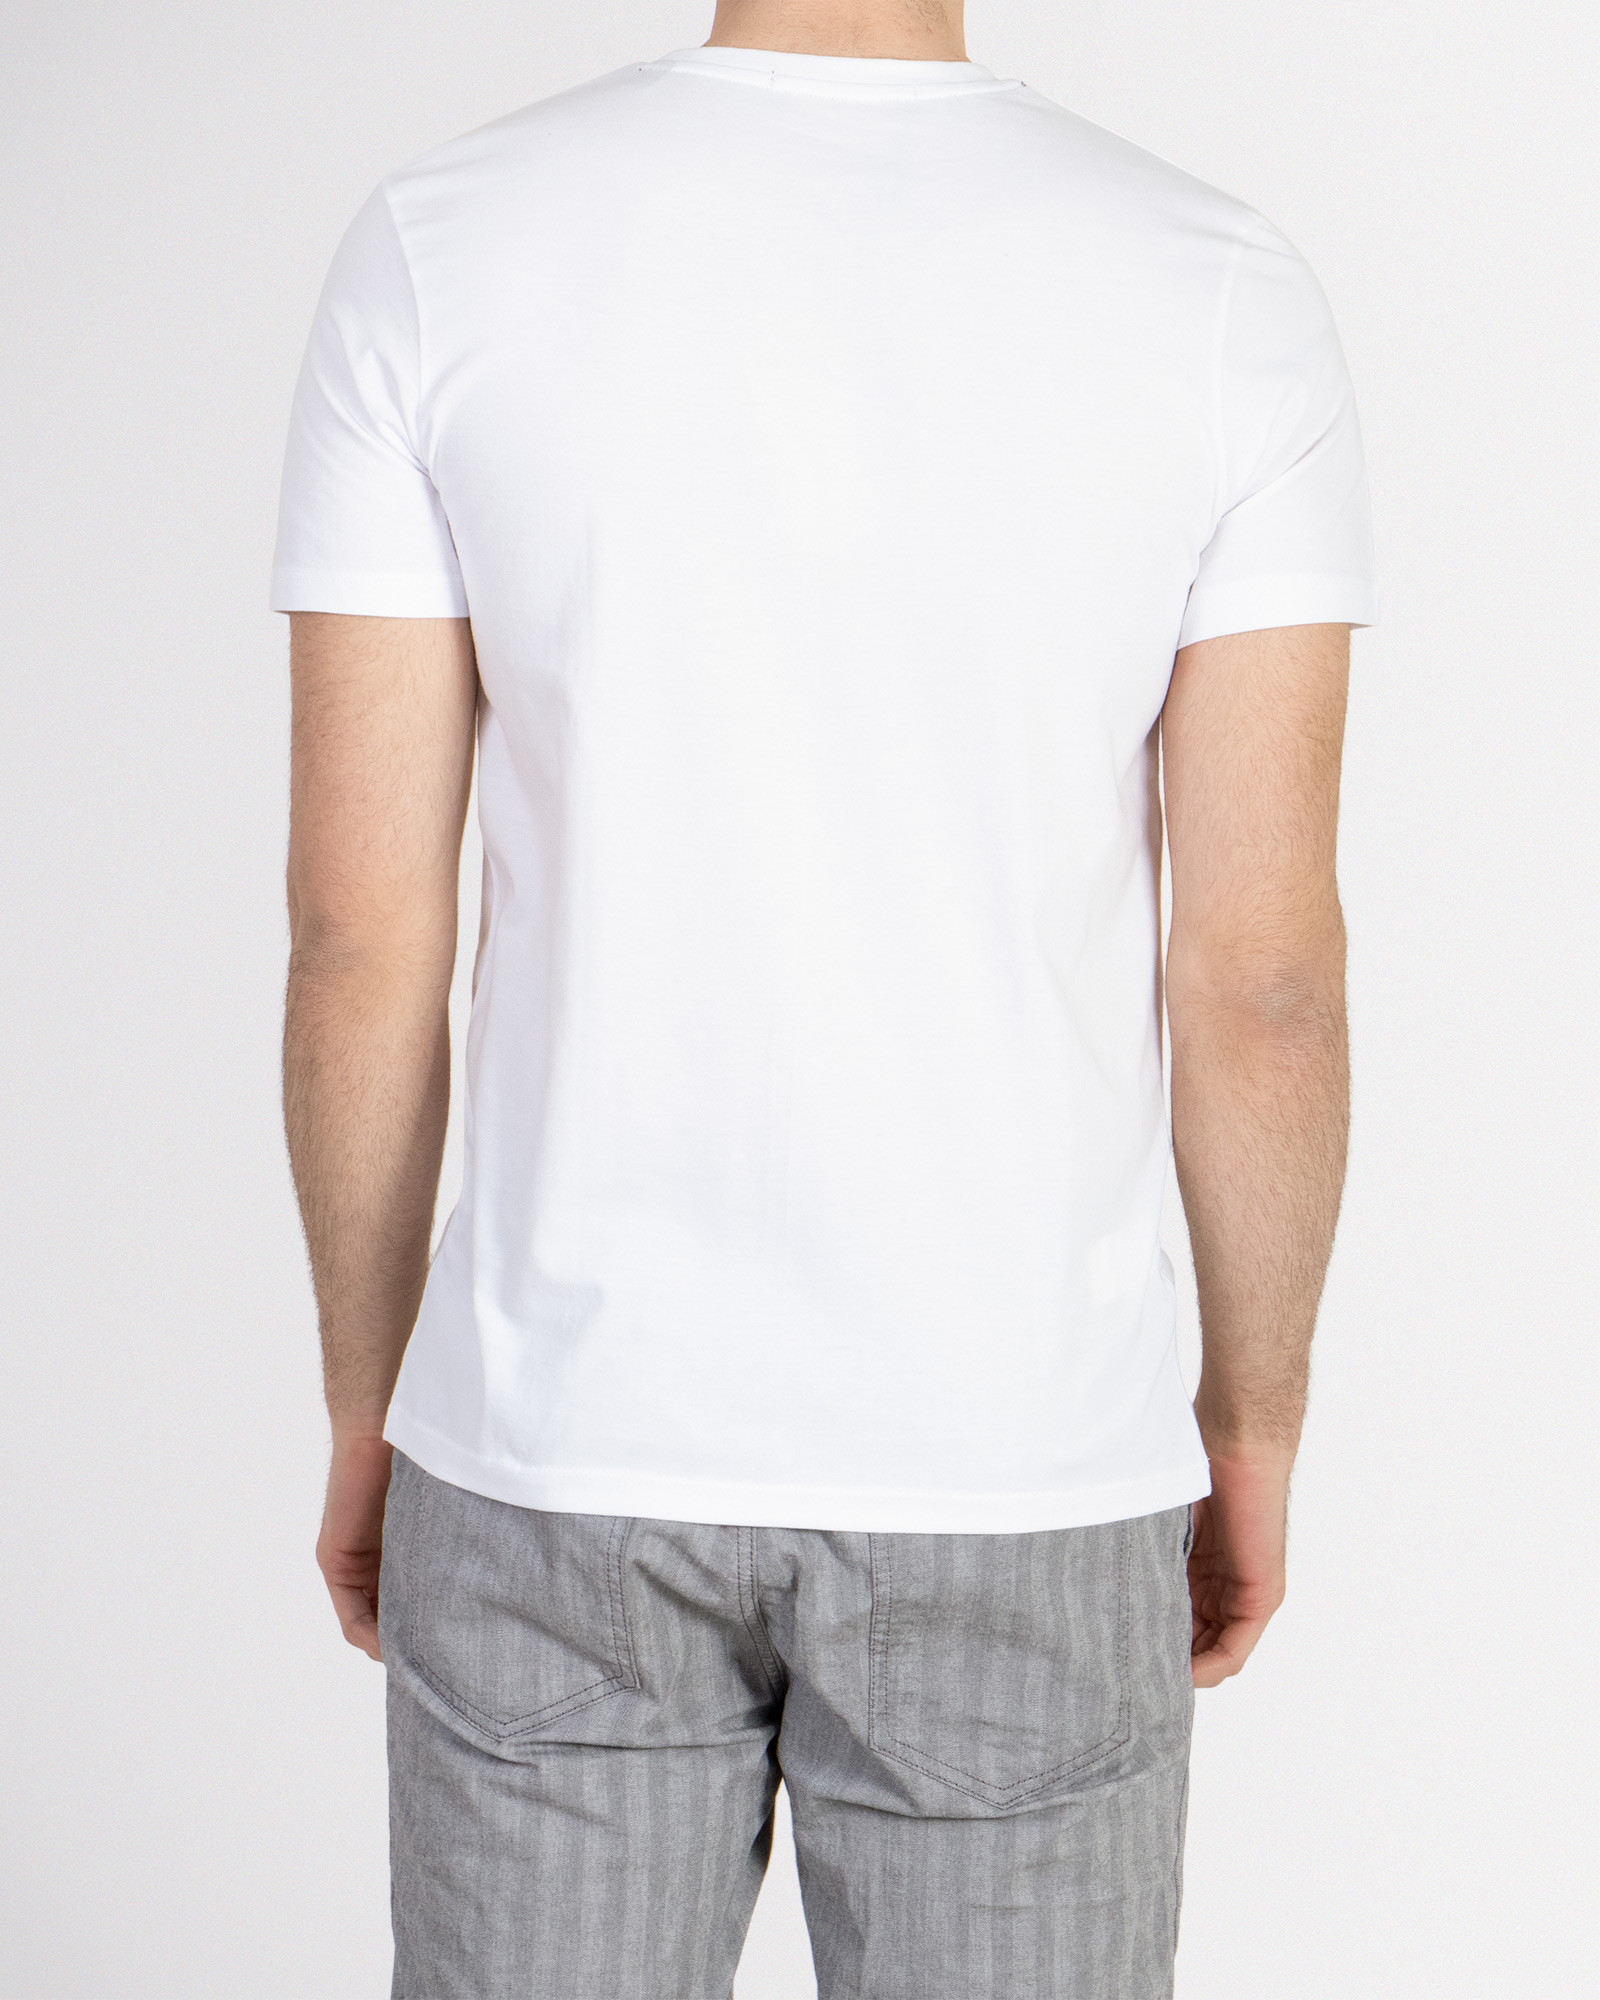 خرید تیشرت مردانه چاپ دار سفید 18429151